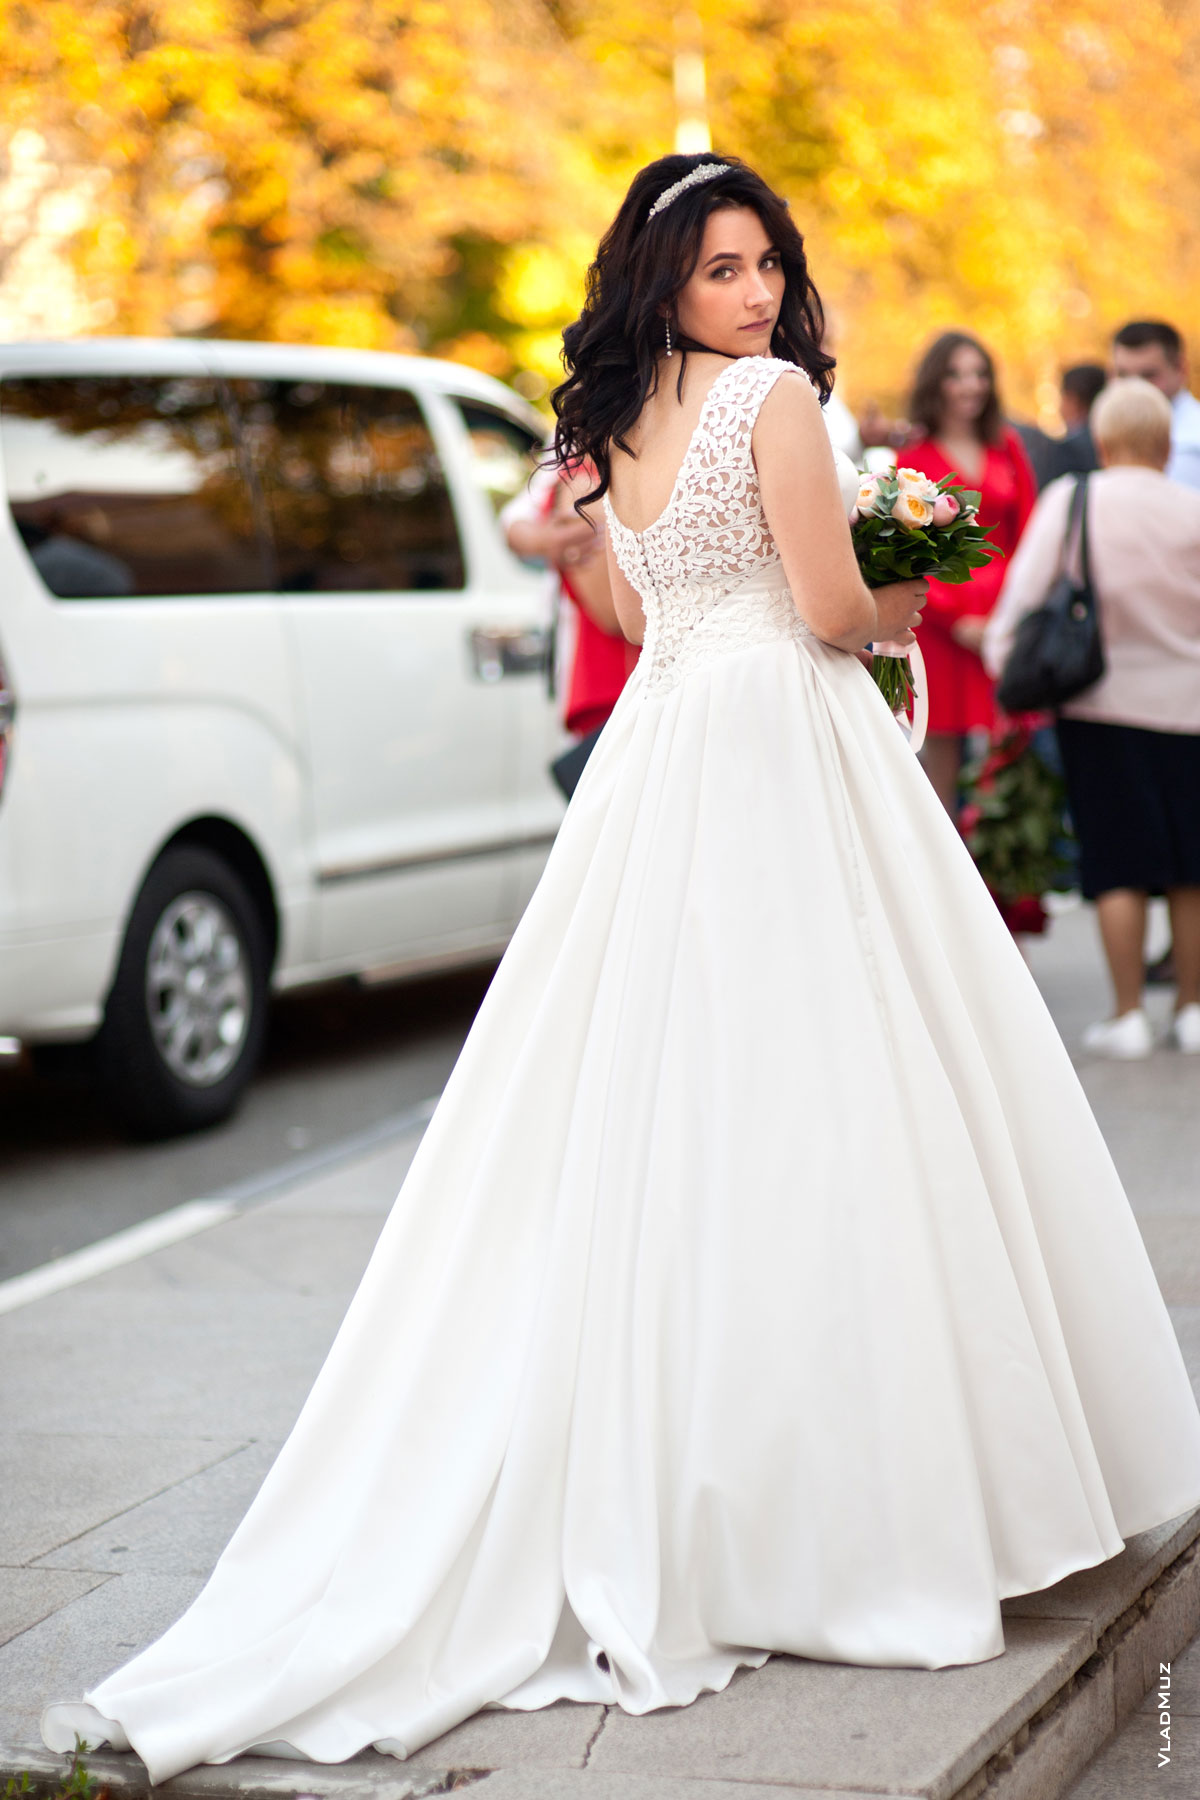 Фото невесты в свадебном платье со шлейфом, со спины, в полный рост